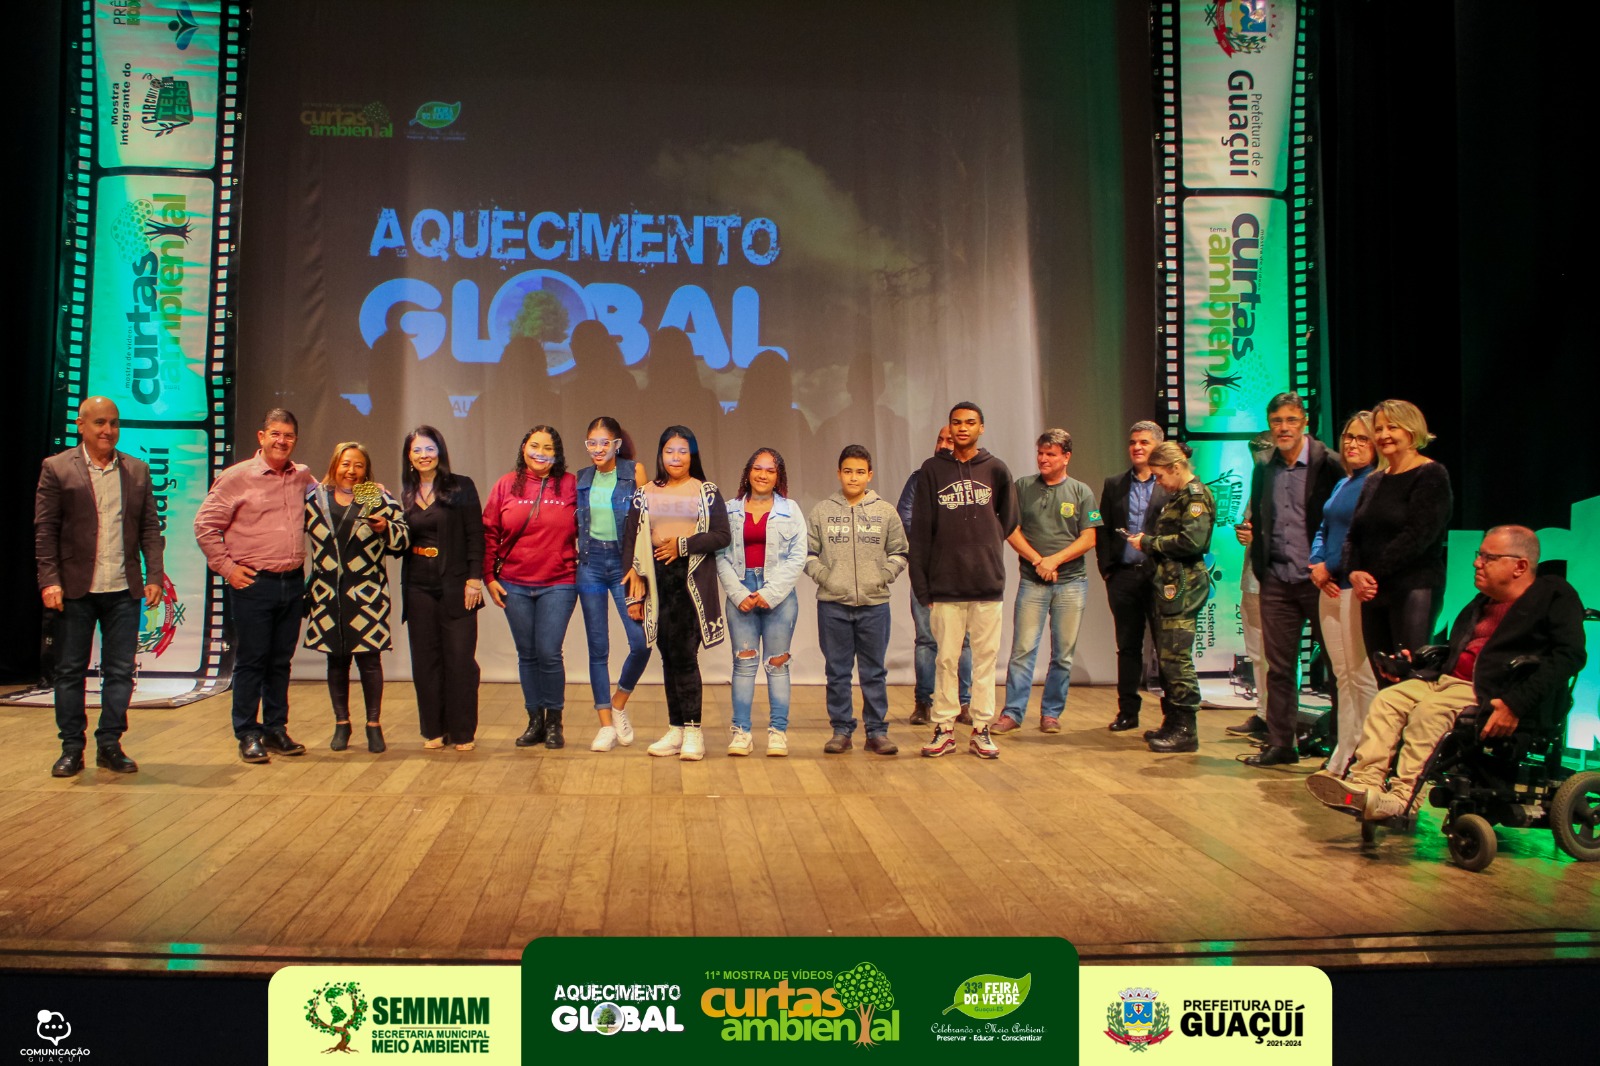 Foto: Reprodução/Prefeitura de Guaçuí - ES